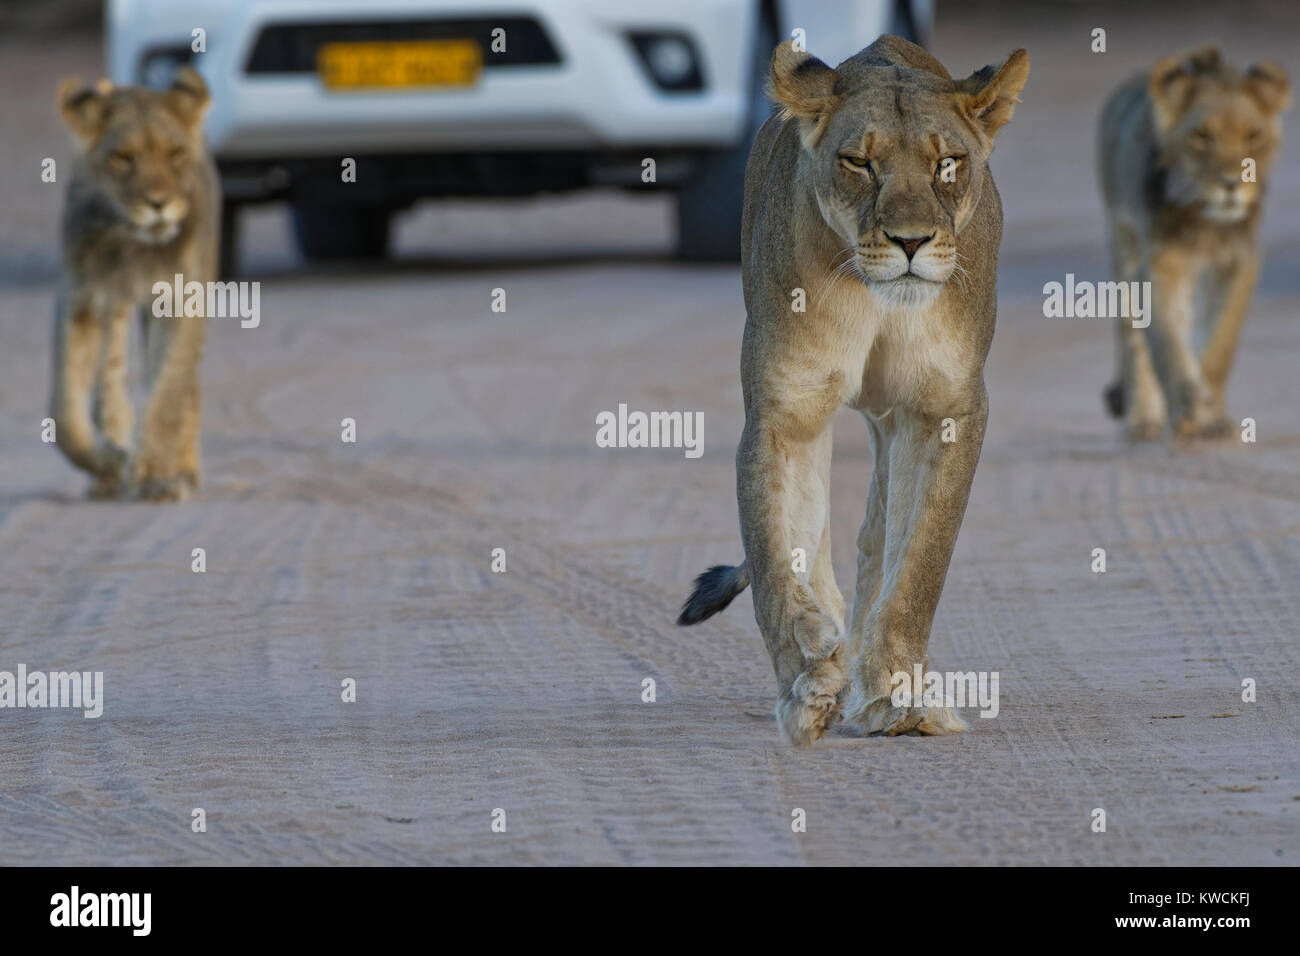 Afrikanische Löwen (Panthera leo), Löwin mit zwei junge Männer auf einer Schotterstraße, Kgalagadi Transfrontier Park, Northern Cape, Südafrika, Afrika Stockfoto